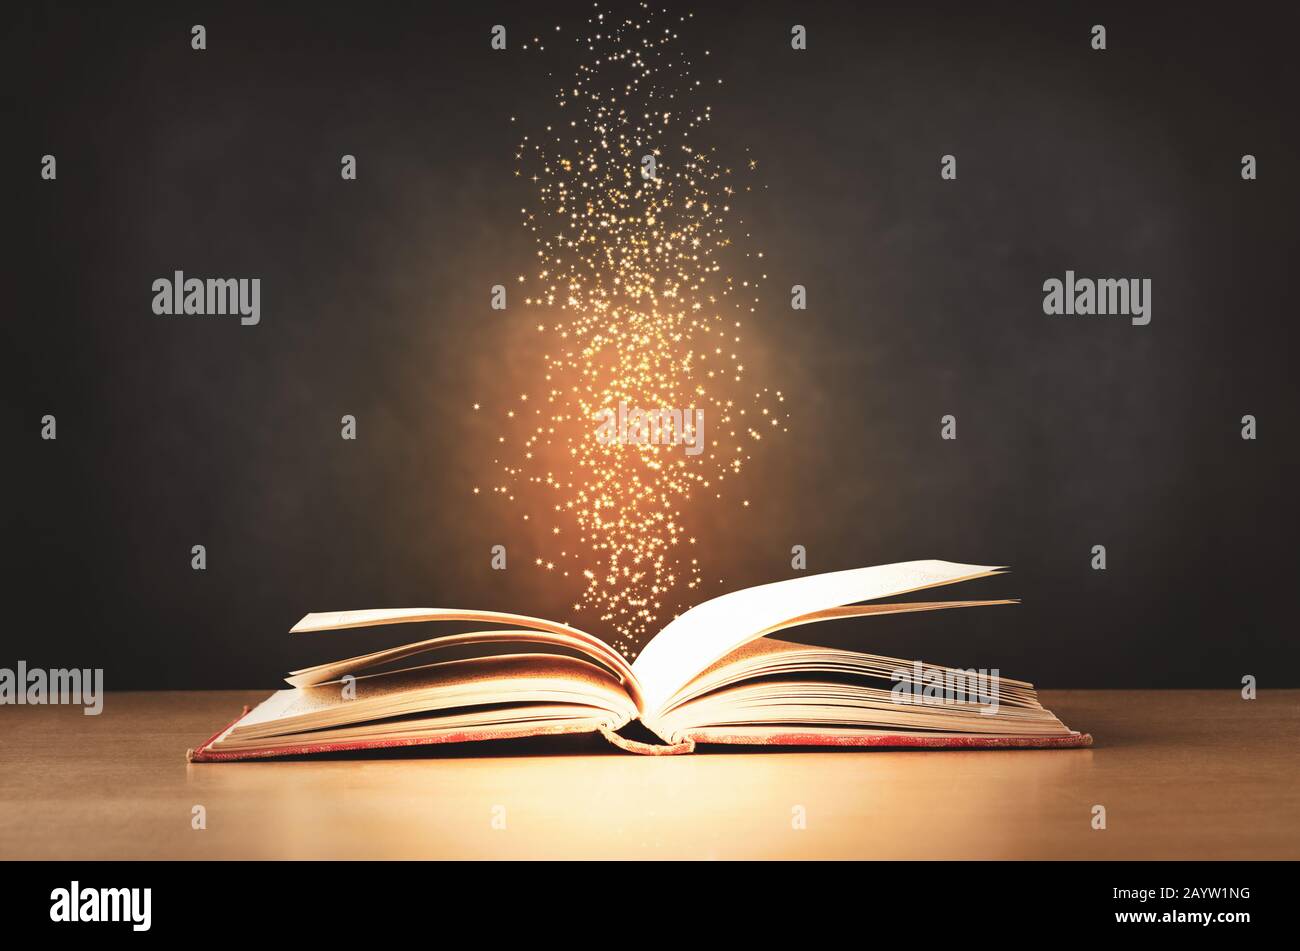 Un libro de texto viejo, desgastado y rojo, que se abría en un escritorio de clase con destellos y estrellas levantándose desde su centro. Fondo de pizarra negro. Foto de stock